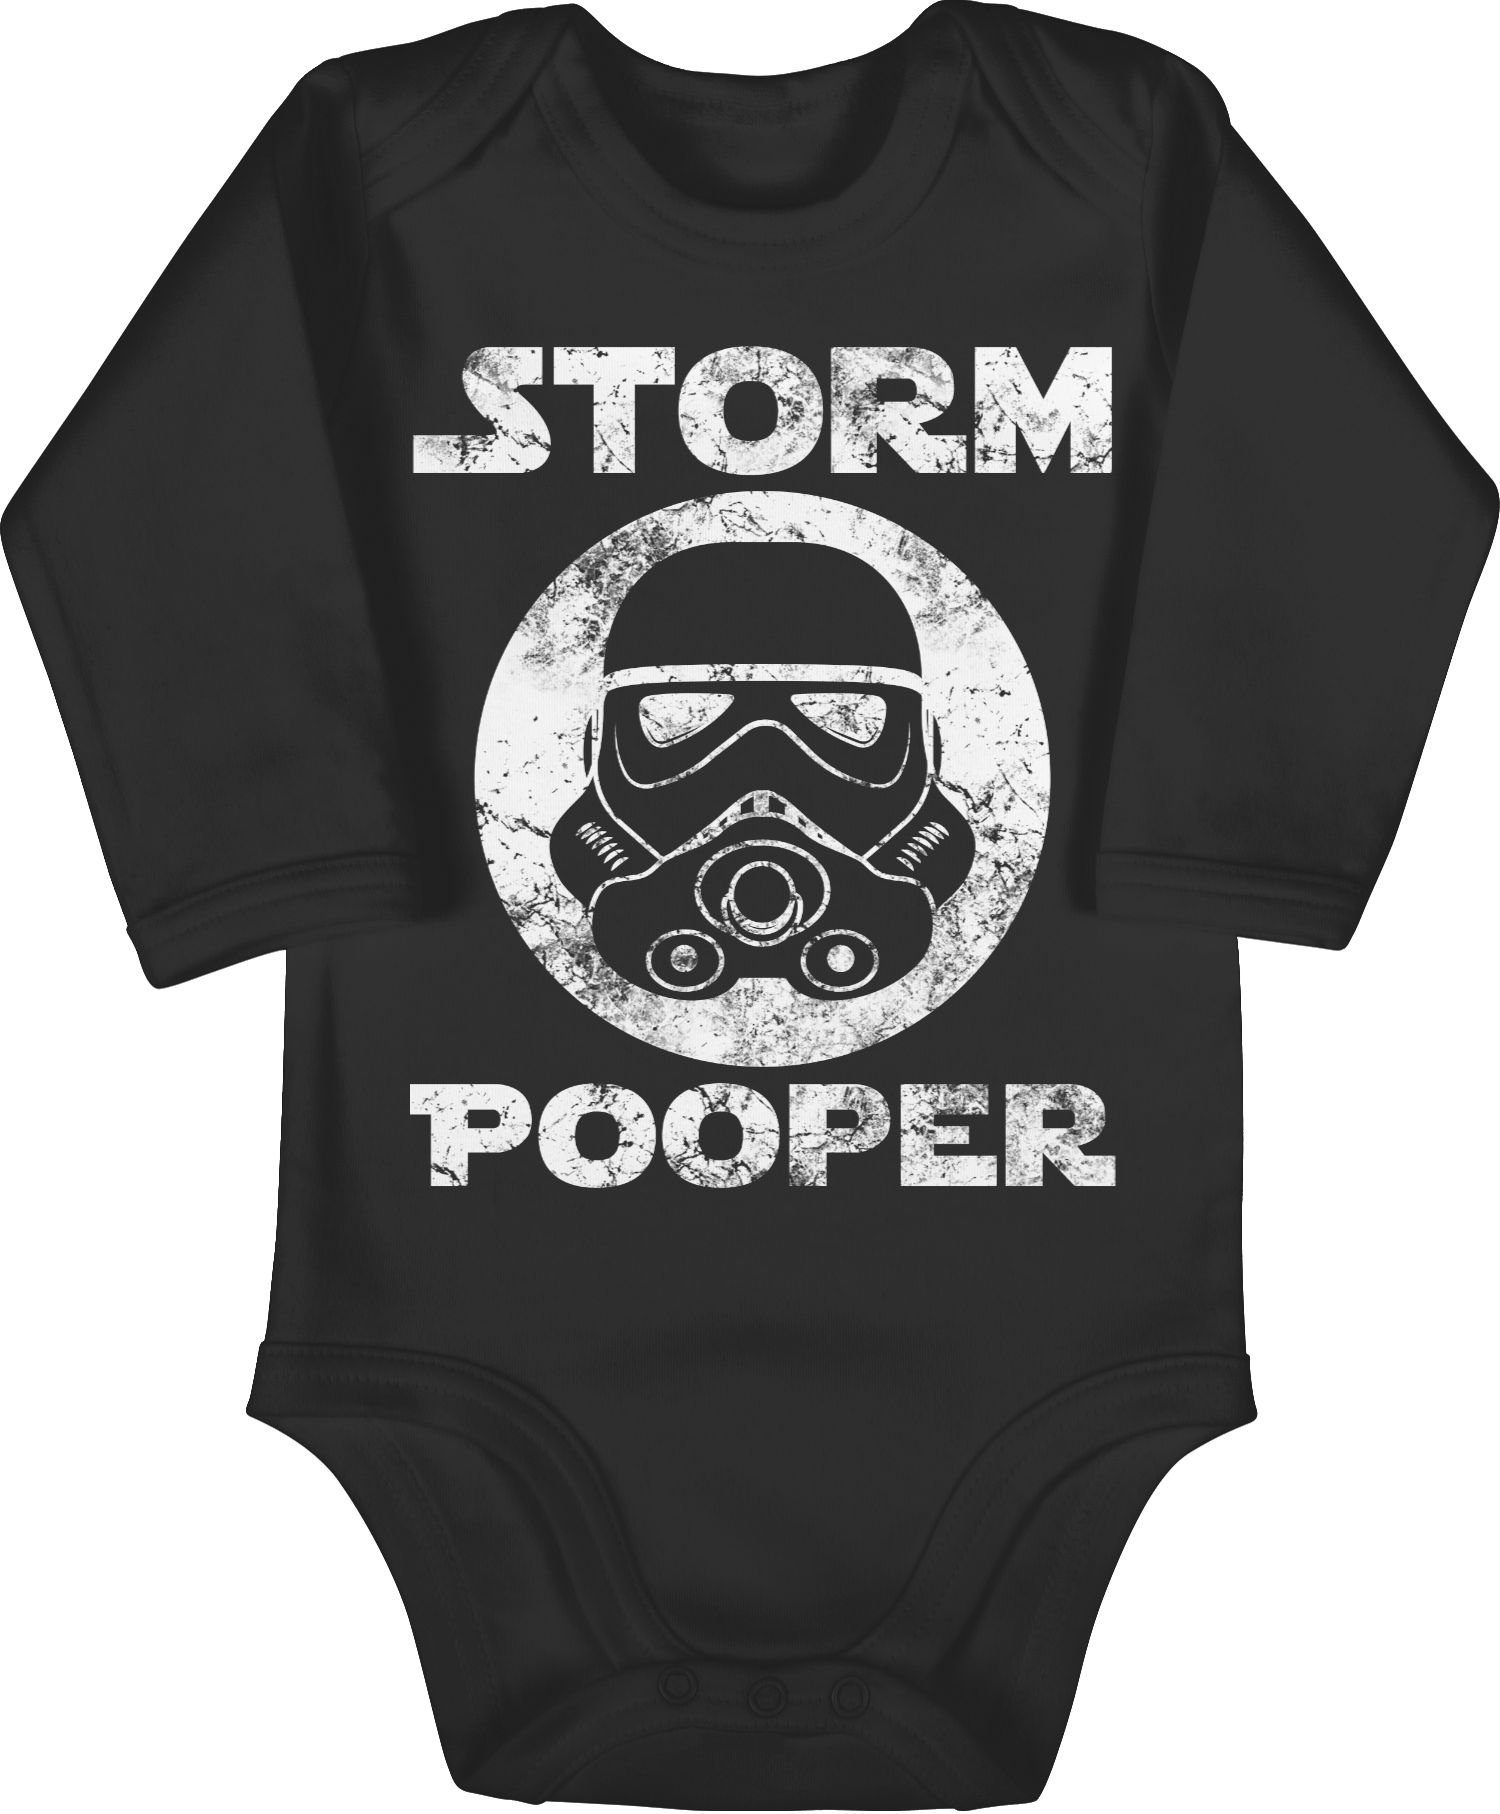 1 Storm Sprüche Shirtracer Pooper Vintage Schwarz Baby Shirtbody